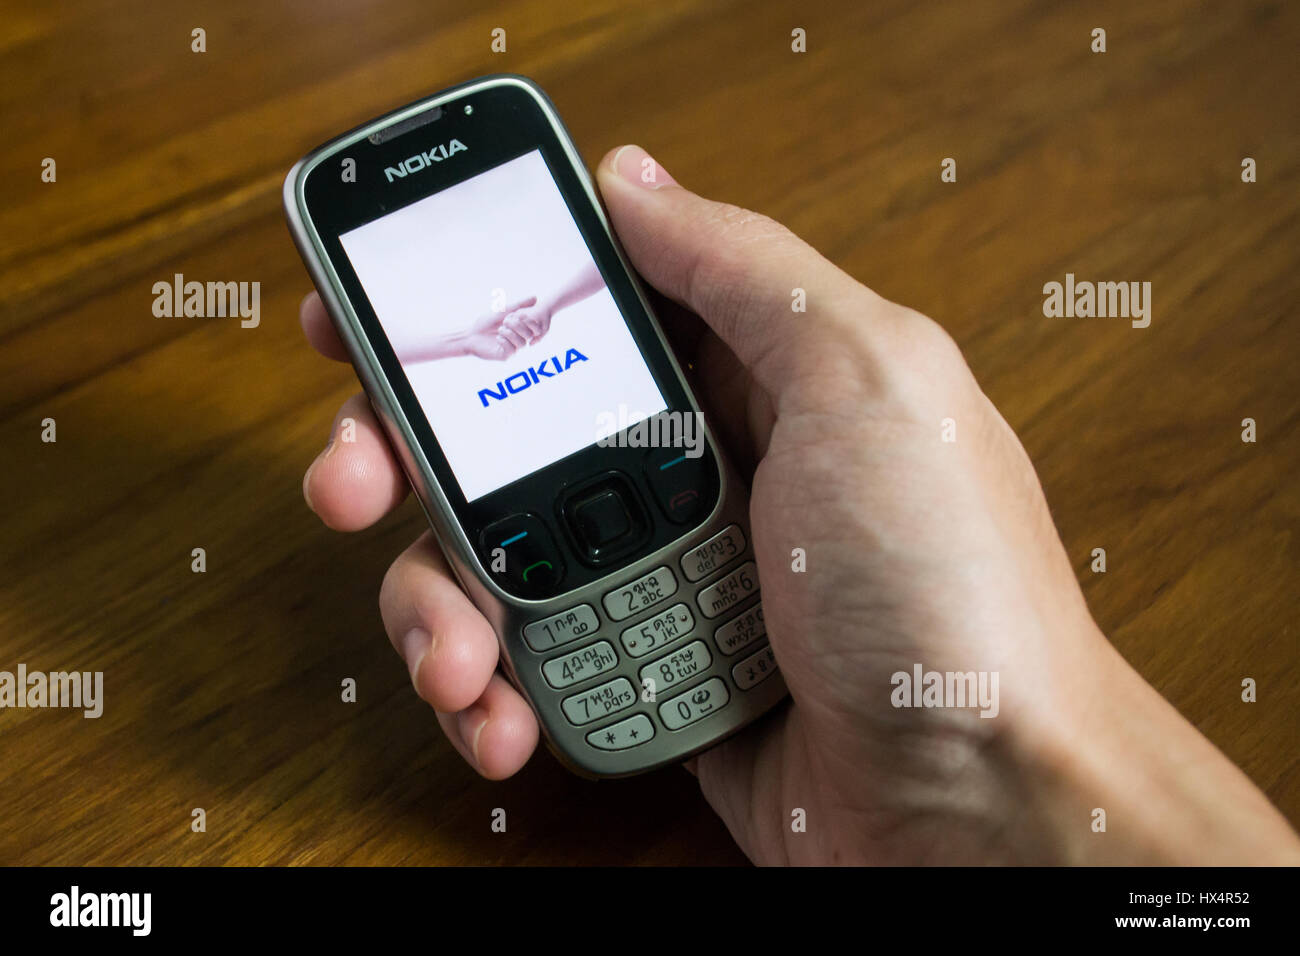 Bangkok, Tailandia - Marzo 24, 2017 : teléfono móvil Nokia en una mano que muestra la pantalla con el logotipo de Nokia. Foto de stock